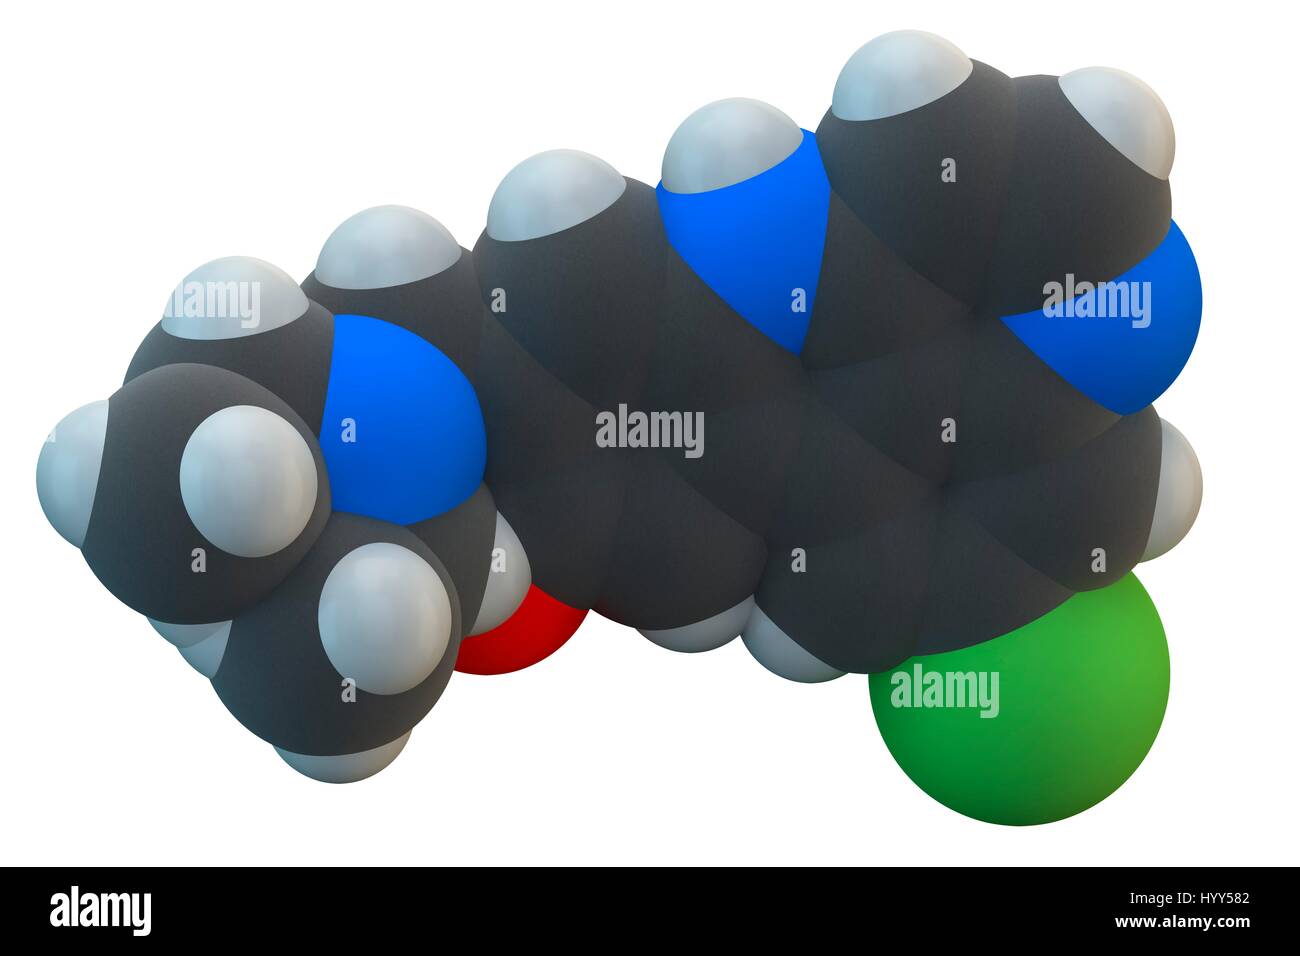 Amodiaquine Anti-Malaria-Medikamentenmolekül. Chemische Formel ist C20H22ClN3O. Atome werden als Kugeln dargestellt: Kohlenstoff (grau), Wasserstoff (weiß), Chlor (grün), Stickstoff (blau), Sauerstoff (rot). Abbildung. Stockfoto